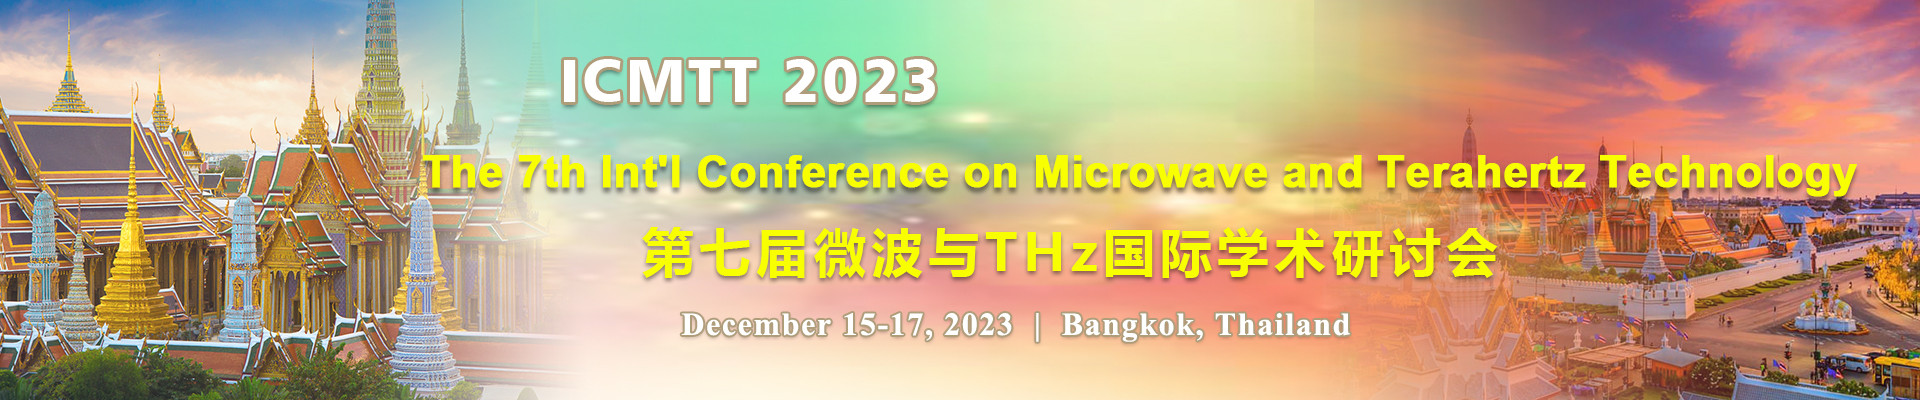 第七屆微波與THz國際學術研討會(ICMTT 2023)